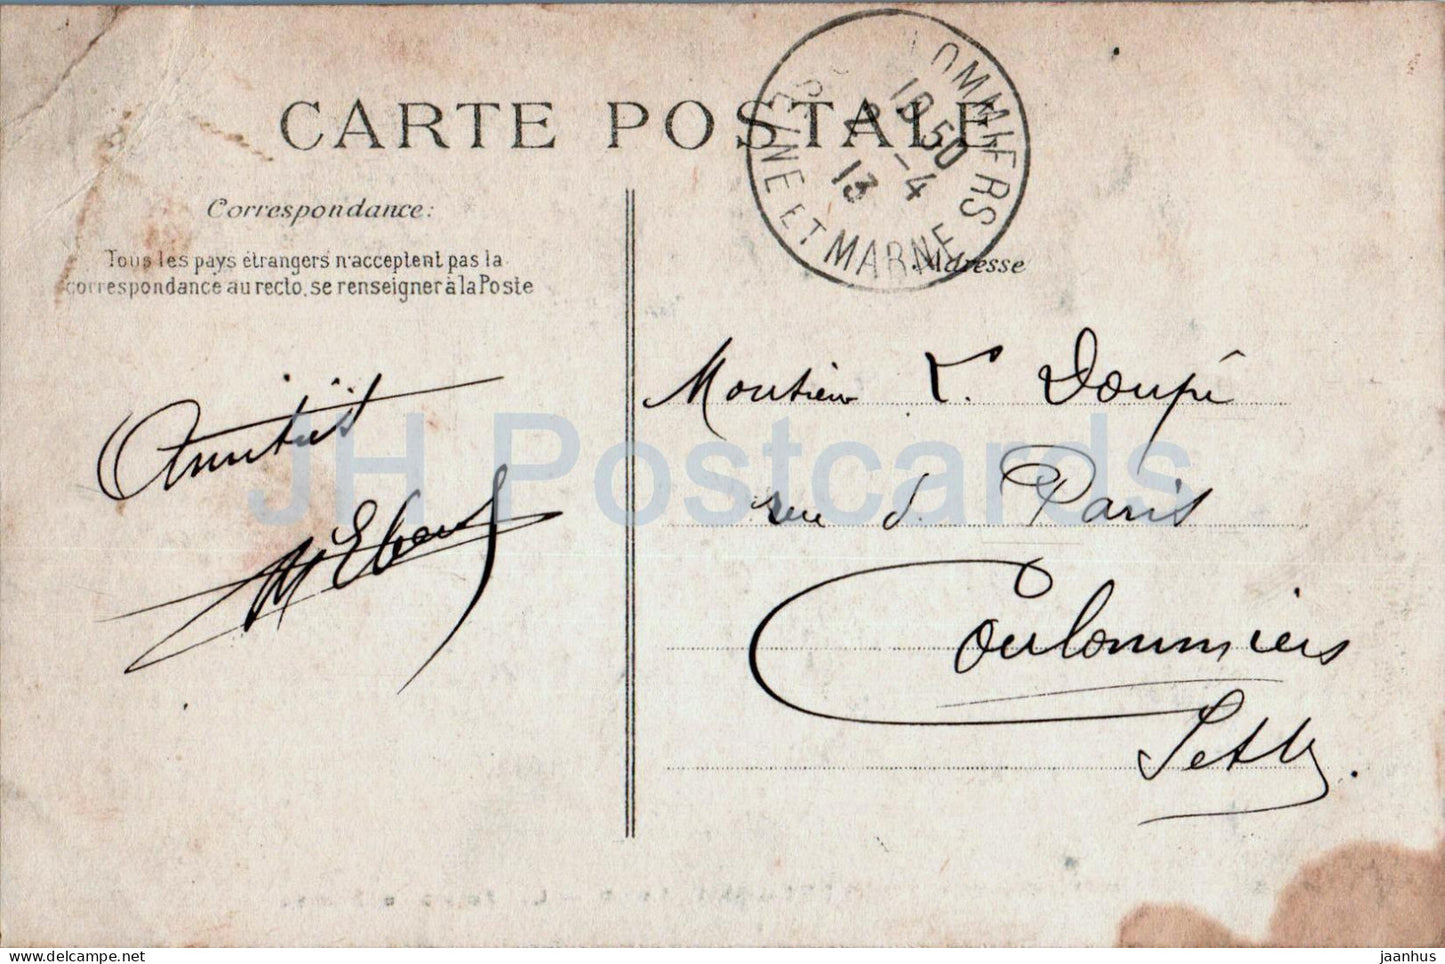 Chateauneuf sur Loire - Les Fosses du Chateau - 1895 - alte Postkarte - 1913 - Frankreich - gebraucht 